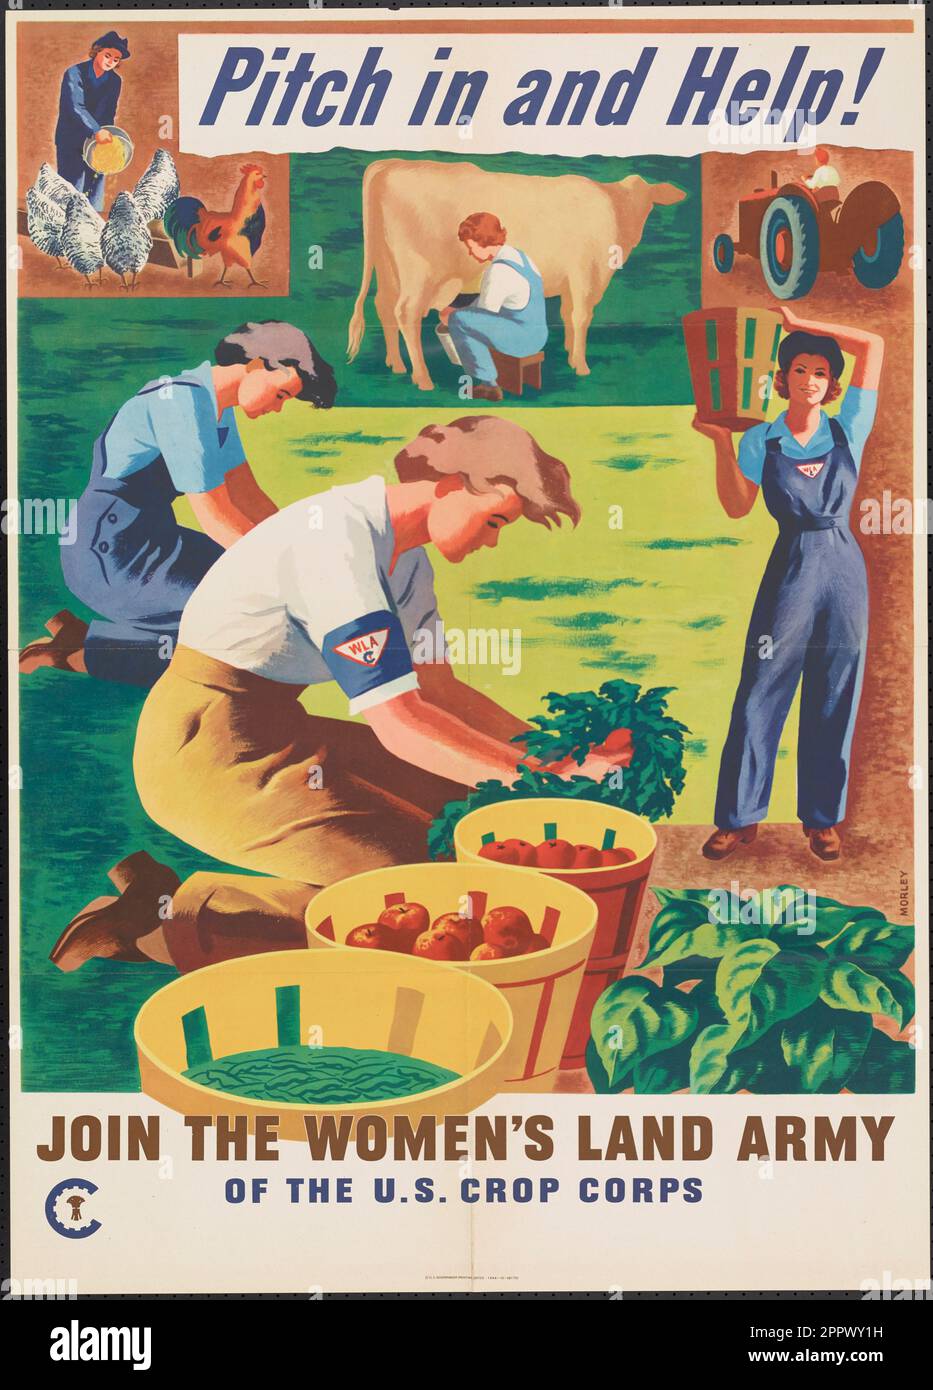 Laissez-vous guider et aidez ! Rejoignez l'Armée de terre des femmes des États-Unis Crop corps par Morley, Hubert Date de publication 1944 Banque D'Images